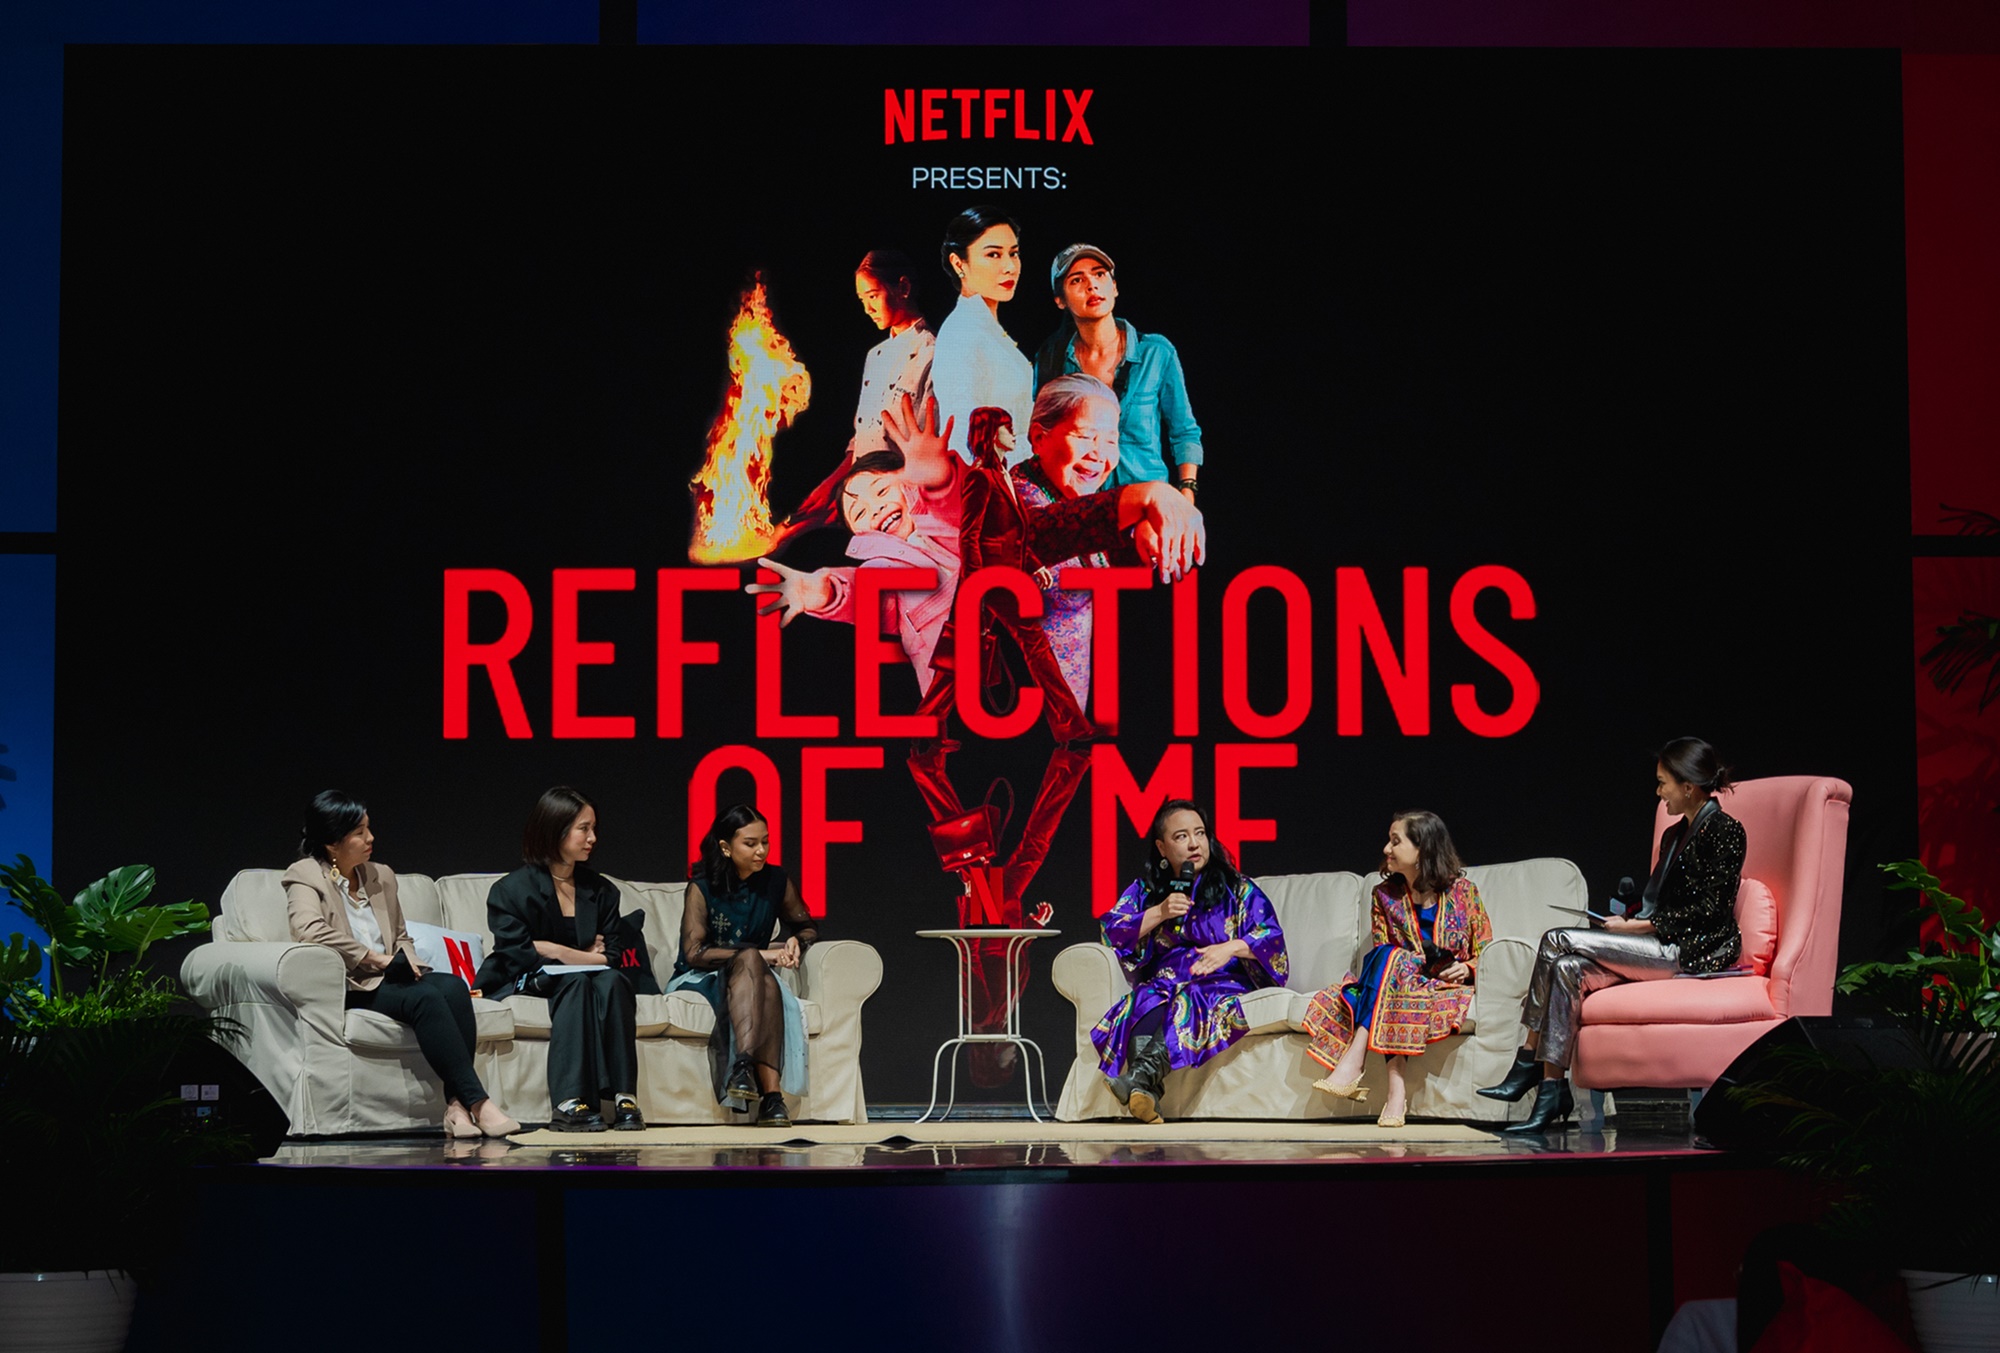 Netflix เฉลิมฉลองเรื่องราวของผู้หญิงในเดือนสตรีสากลภายใต้คอนเซ็ปต์ Reflections Of Me ภาพสะท้อนของตัวฉัน